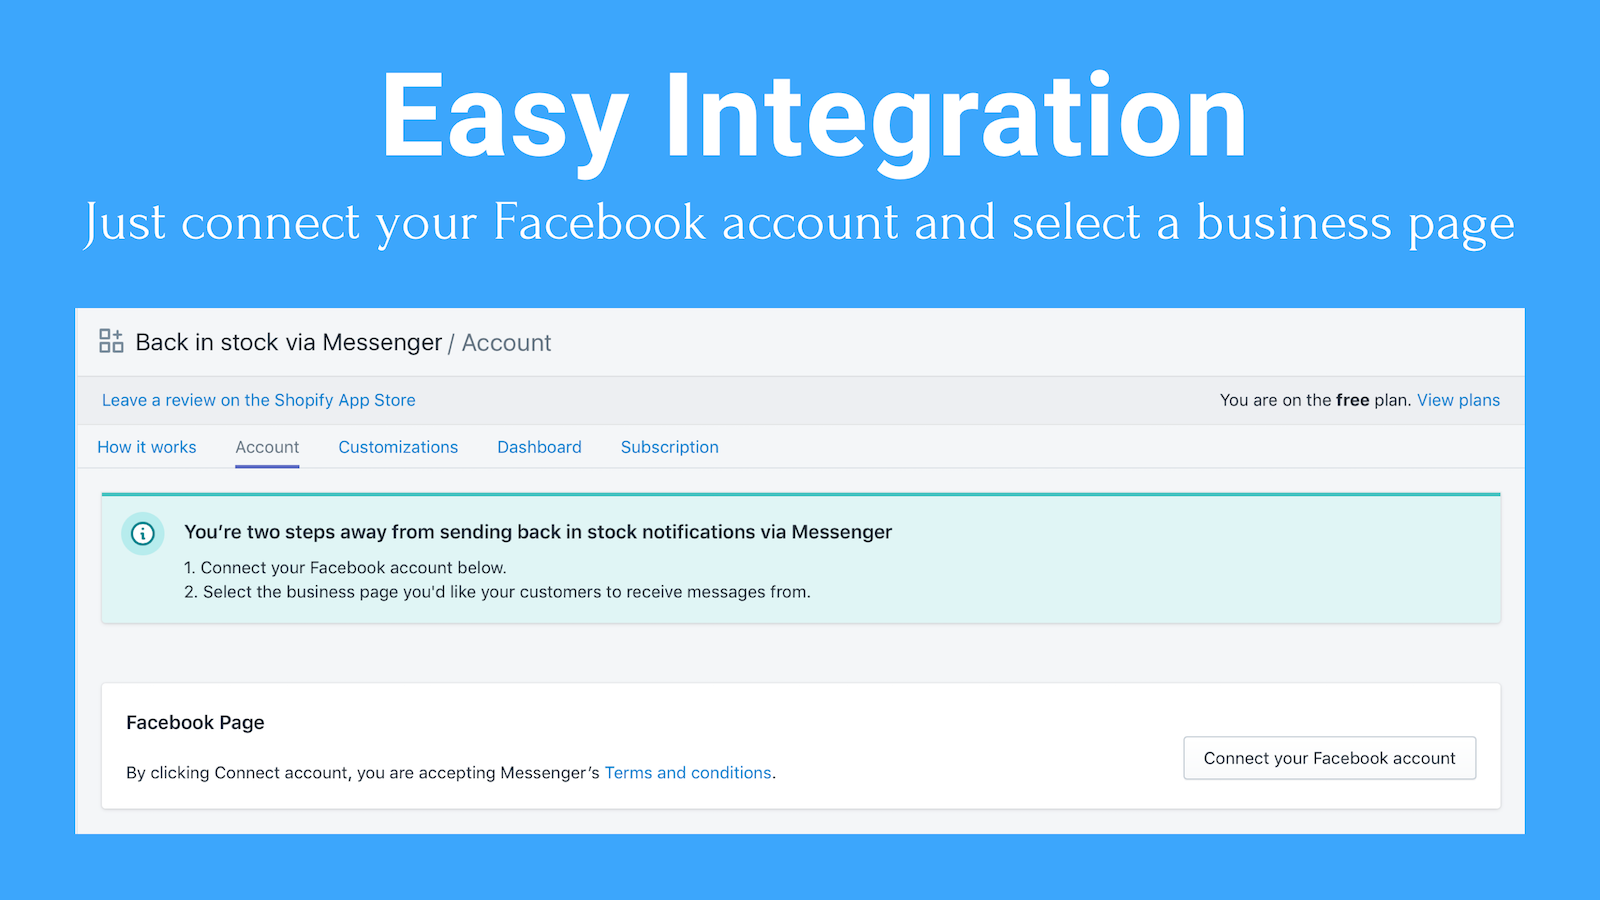 Intégration facile : Il suffit de connecter votre compte Facebook et de sélectionner